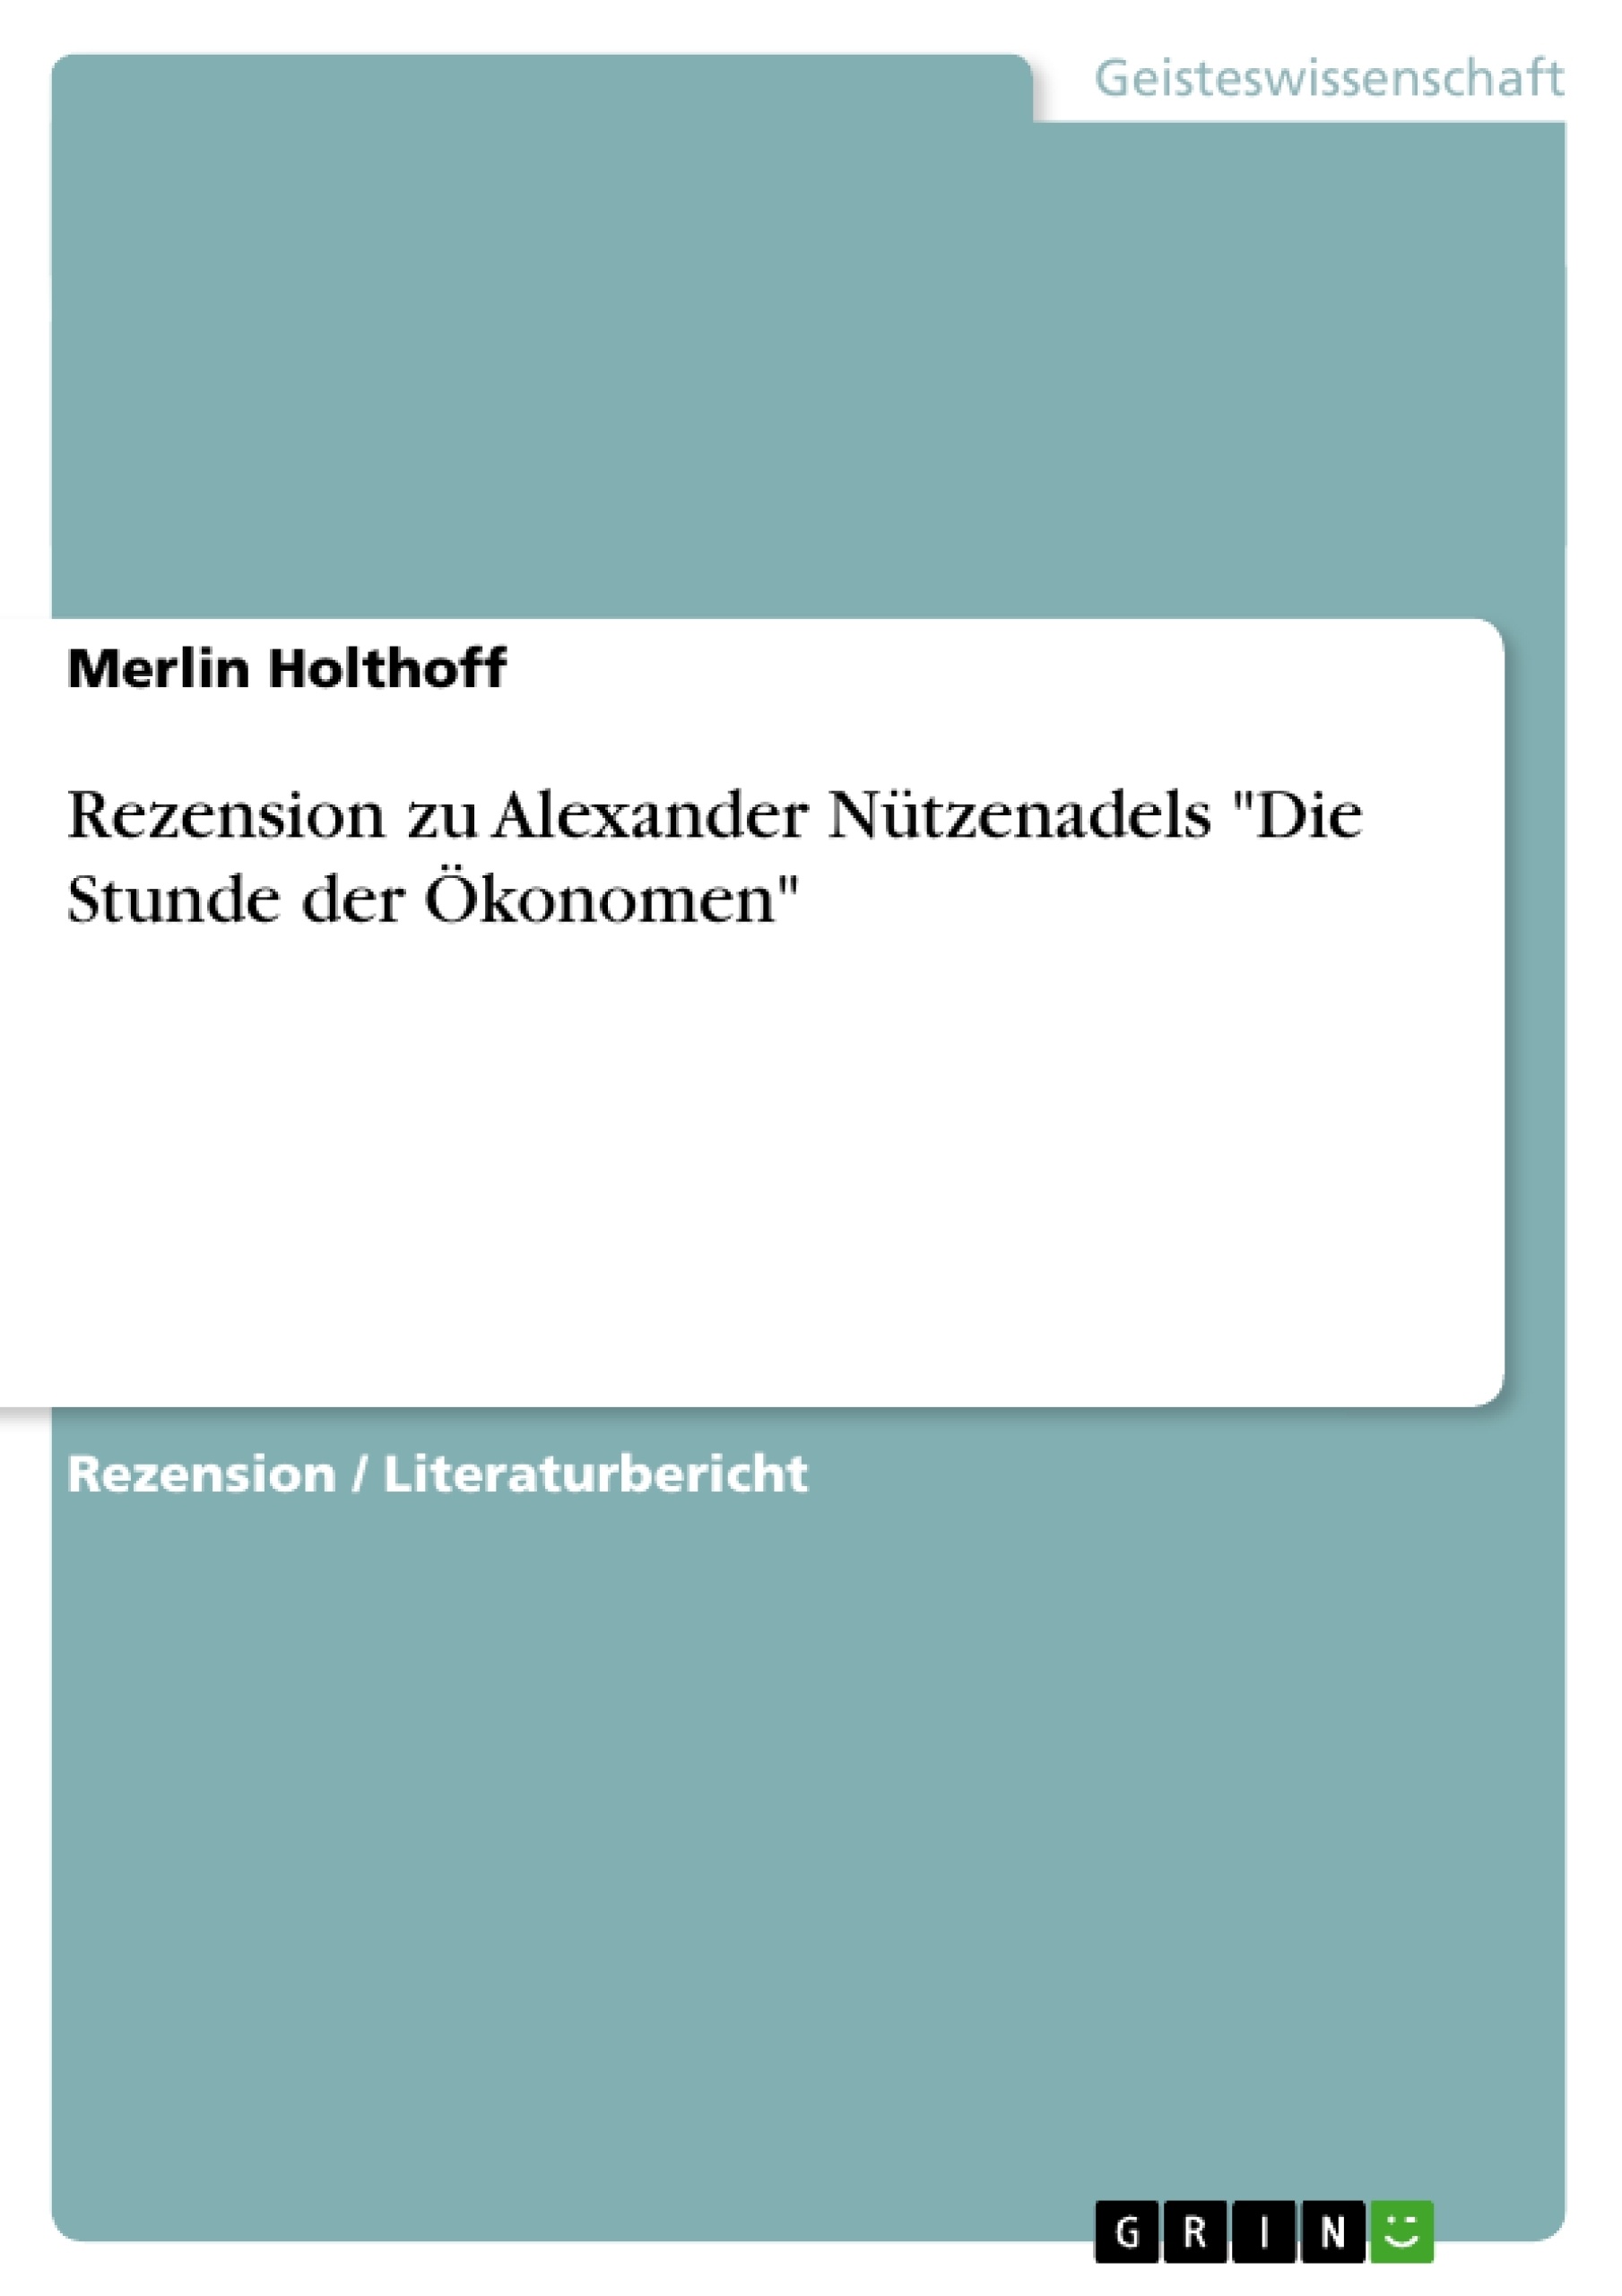 Titre: Rezension zu Alexander Nützenadels "Die Stunde der Ökonomen"